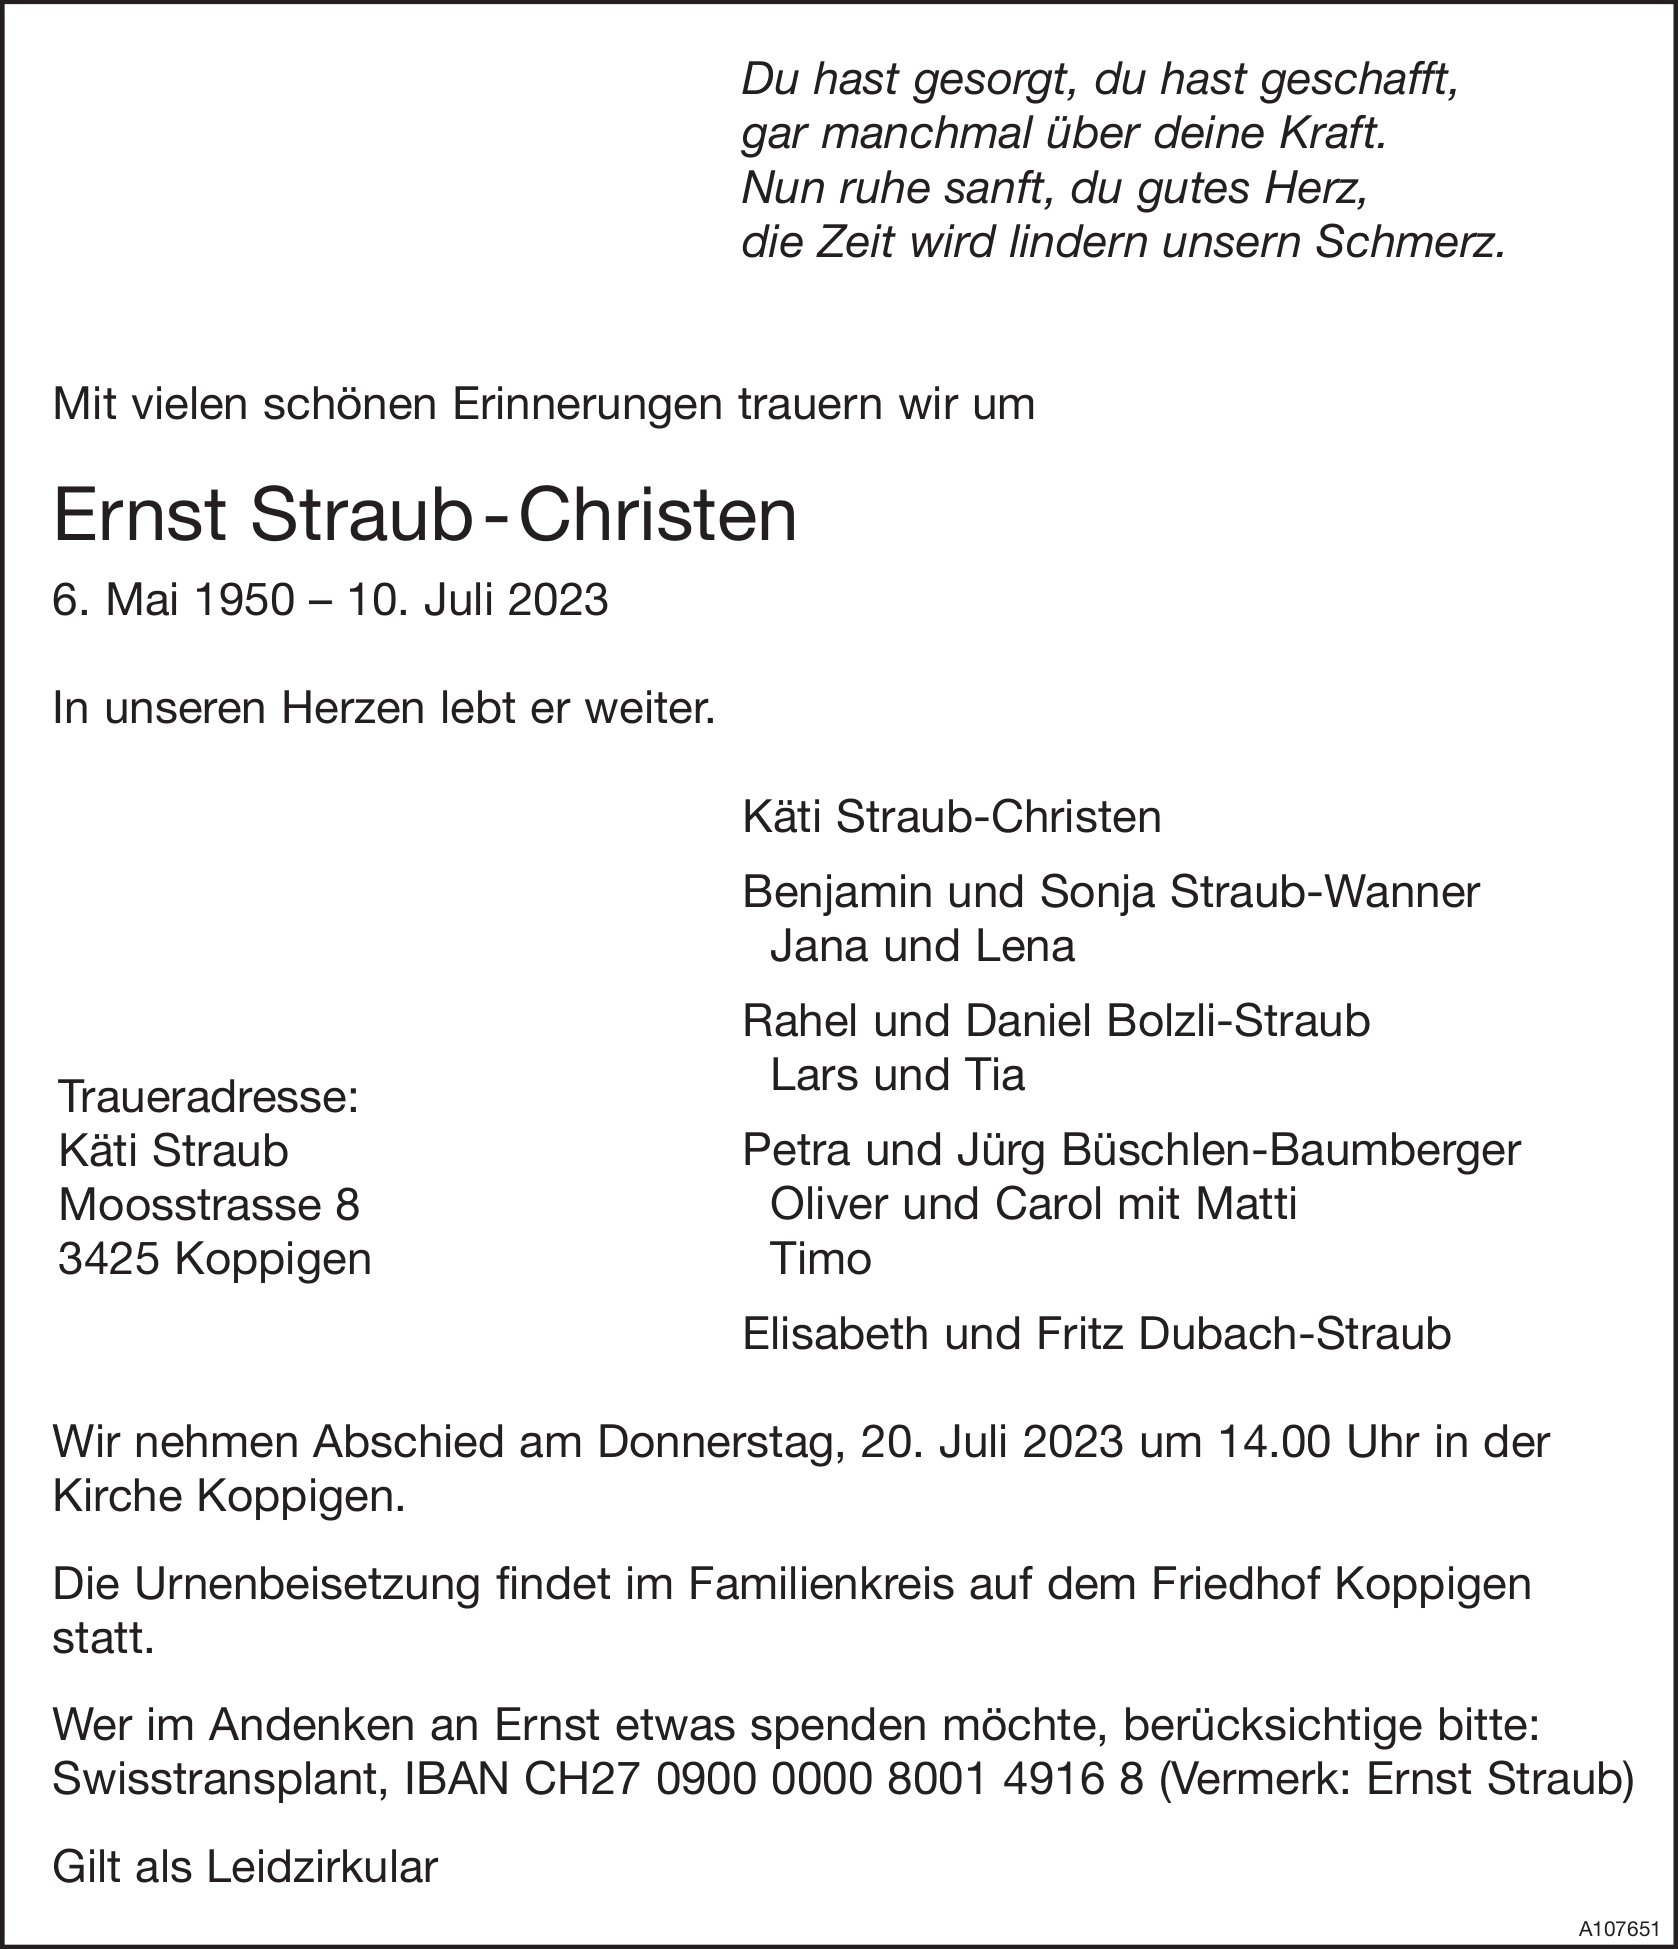 Ernst Straub-Christen, Juli 2023 / TA